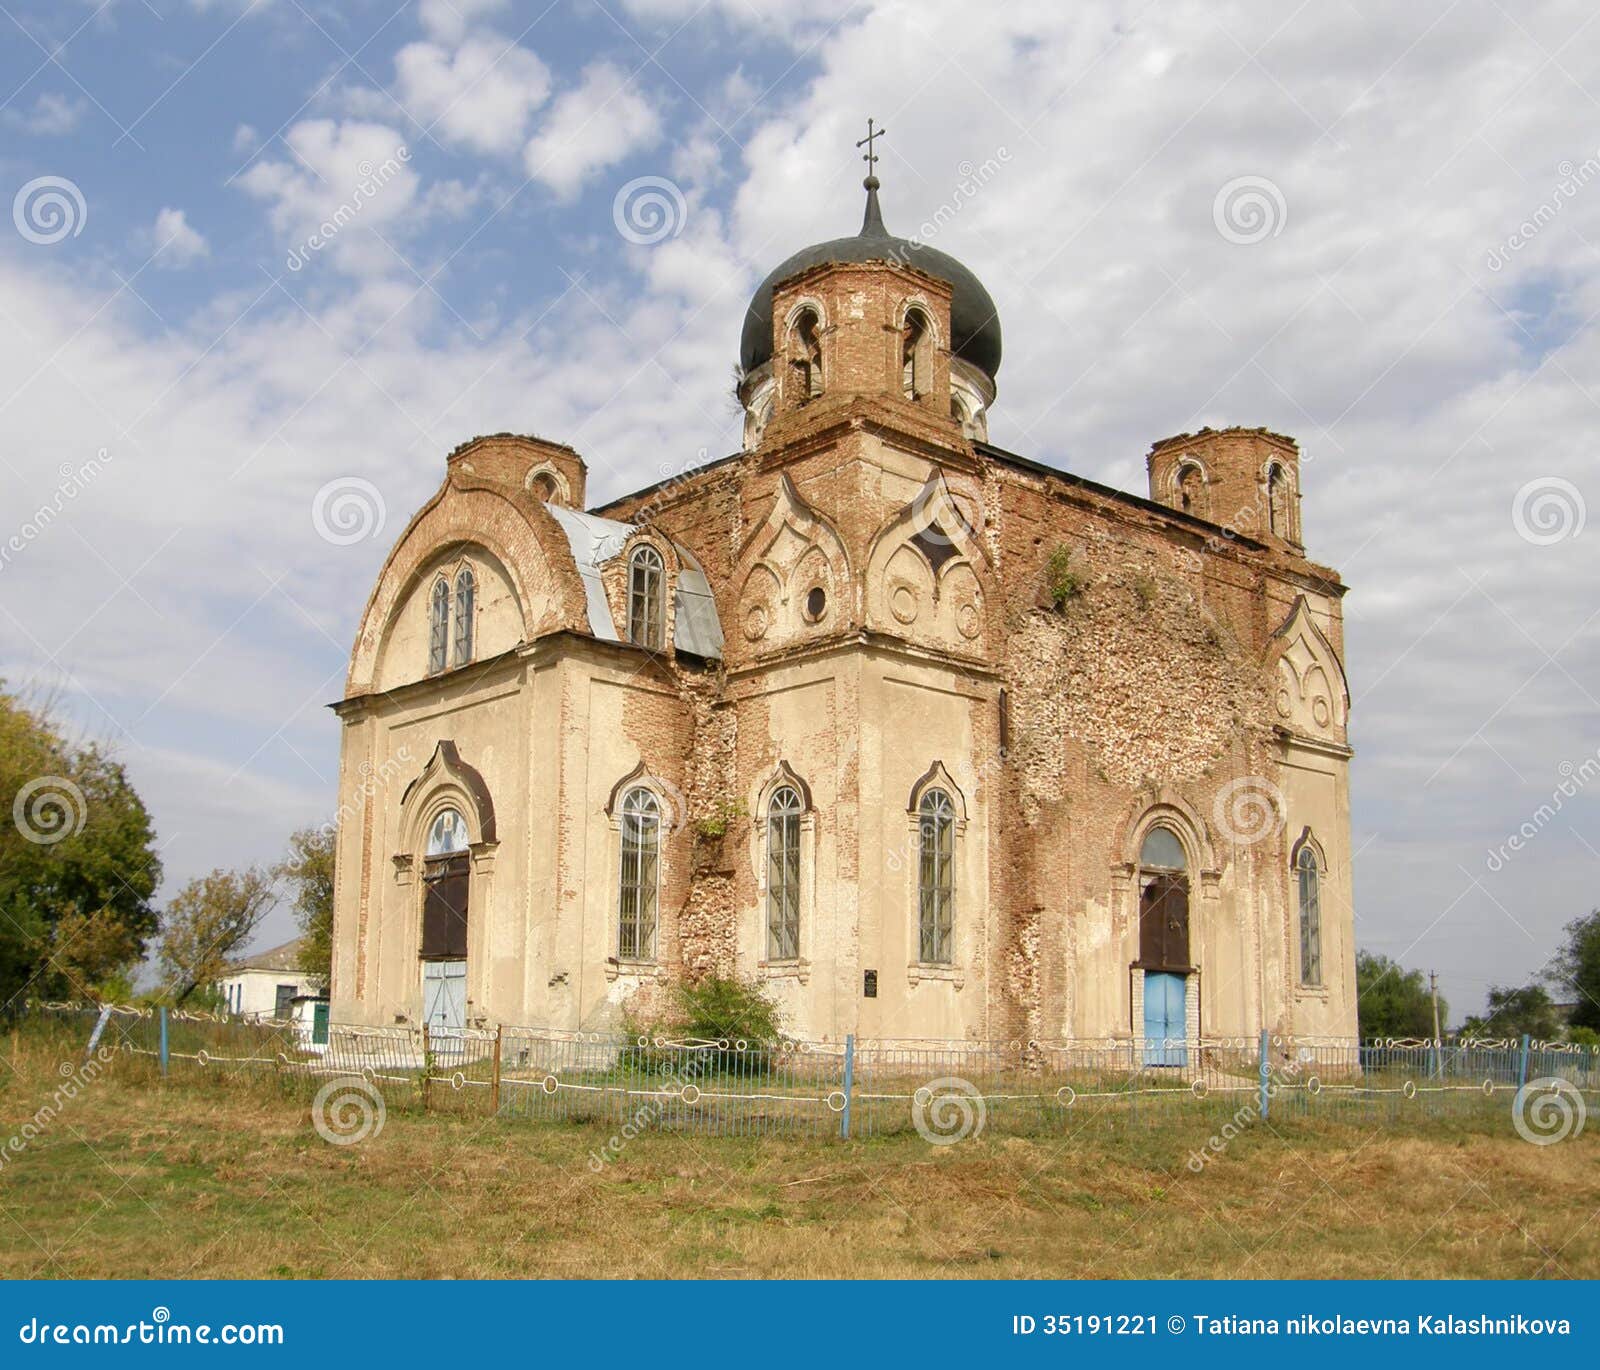 ruined old church. lugansk region.